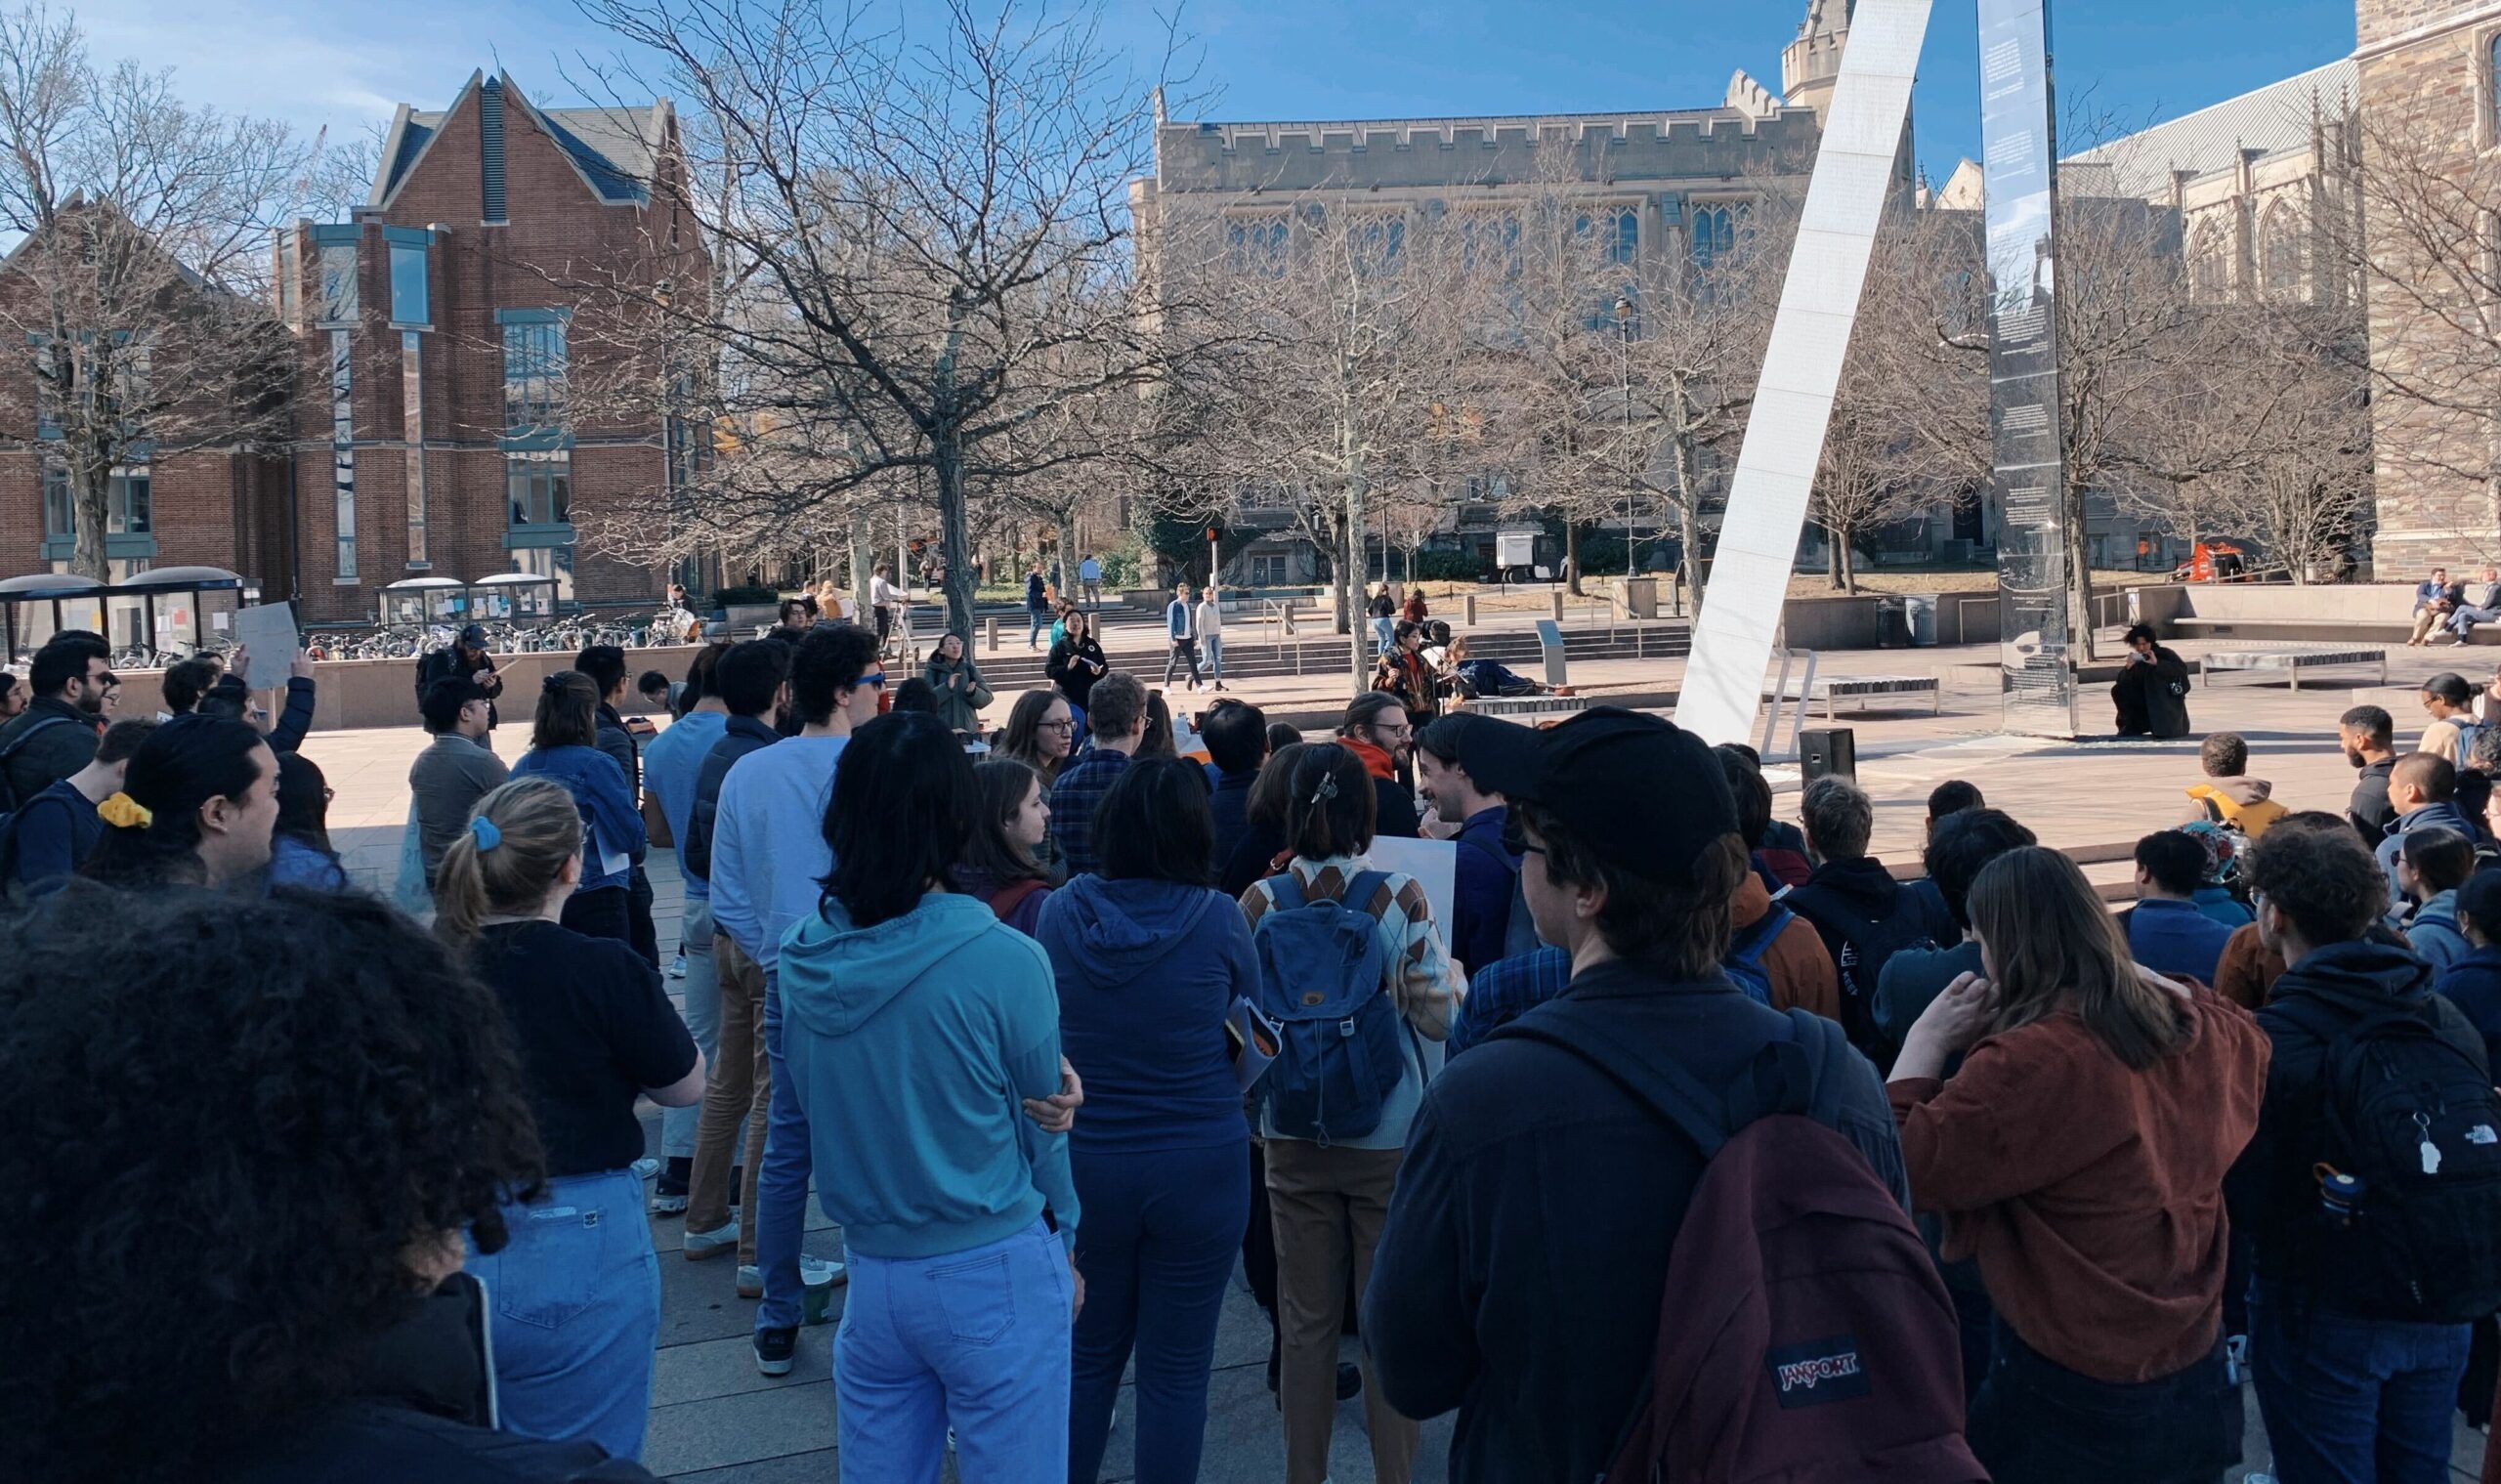 Une photo d'un grand groupe de personnes rassemblées dans une cour du campus de l'Université de Princeton.  Certains tiennent des pancartes mais le spectateur ne peut pas lire ce qui est écrit dessus car les gens font face à la direction opposée à la caméra.  Les arbres sont stériles, marquant les mois d'hiver.